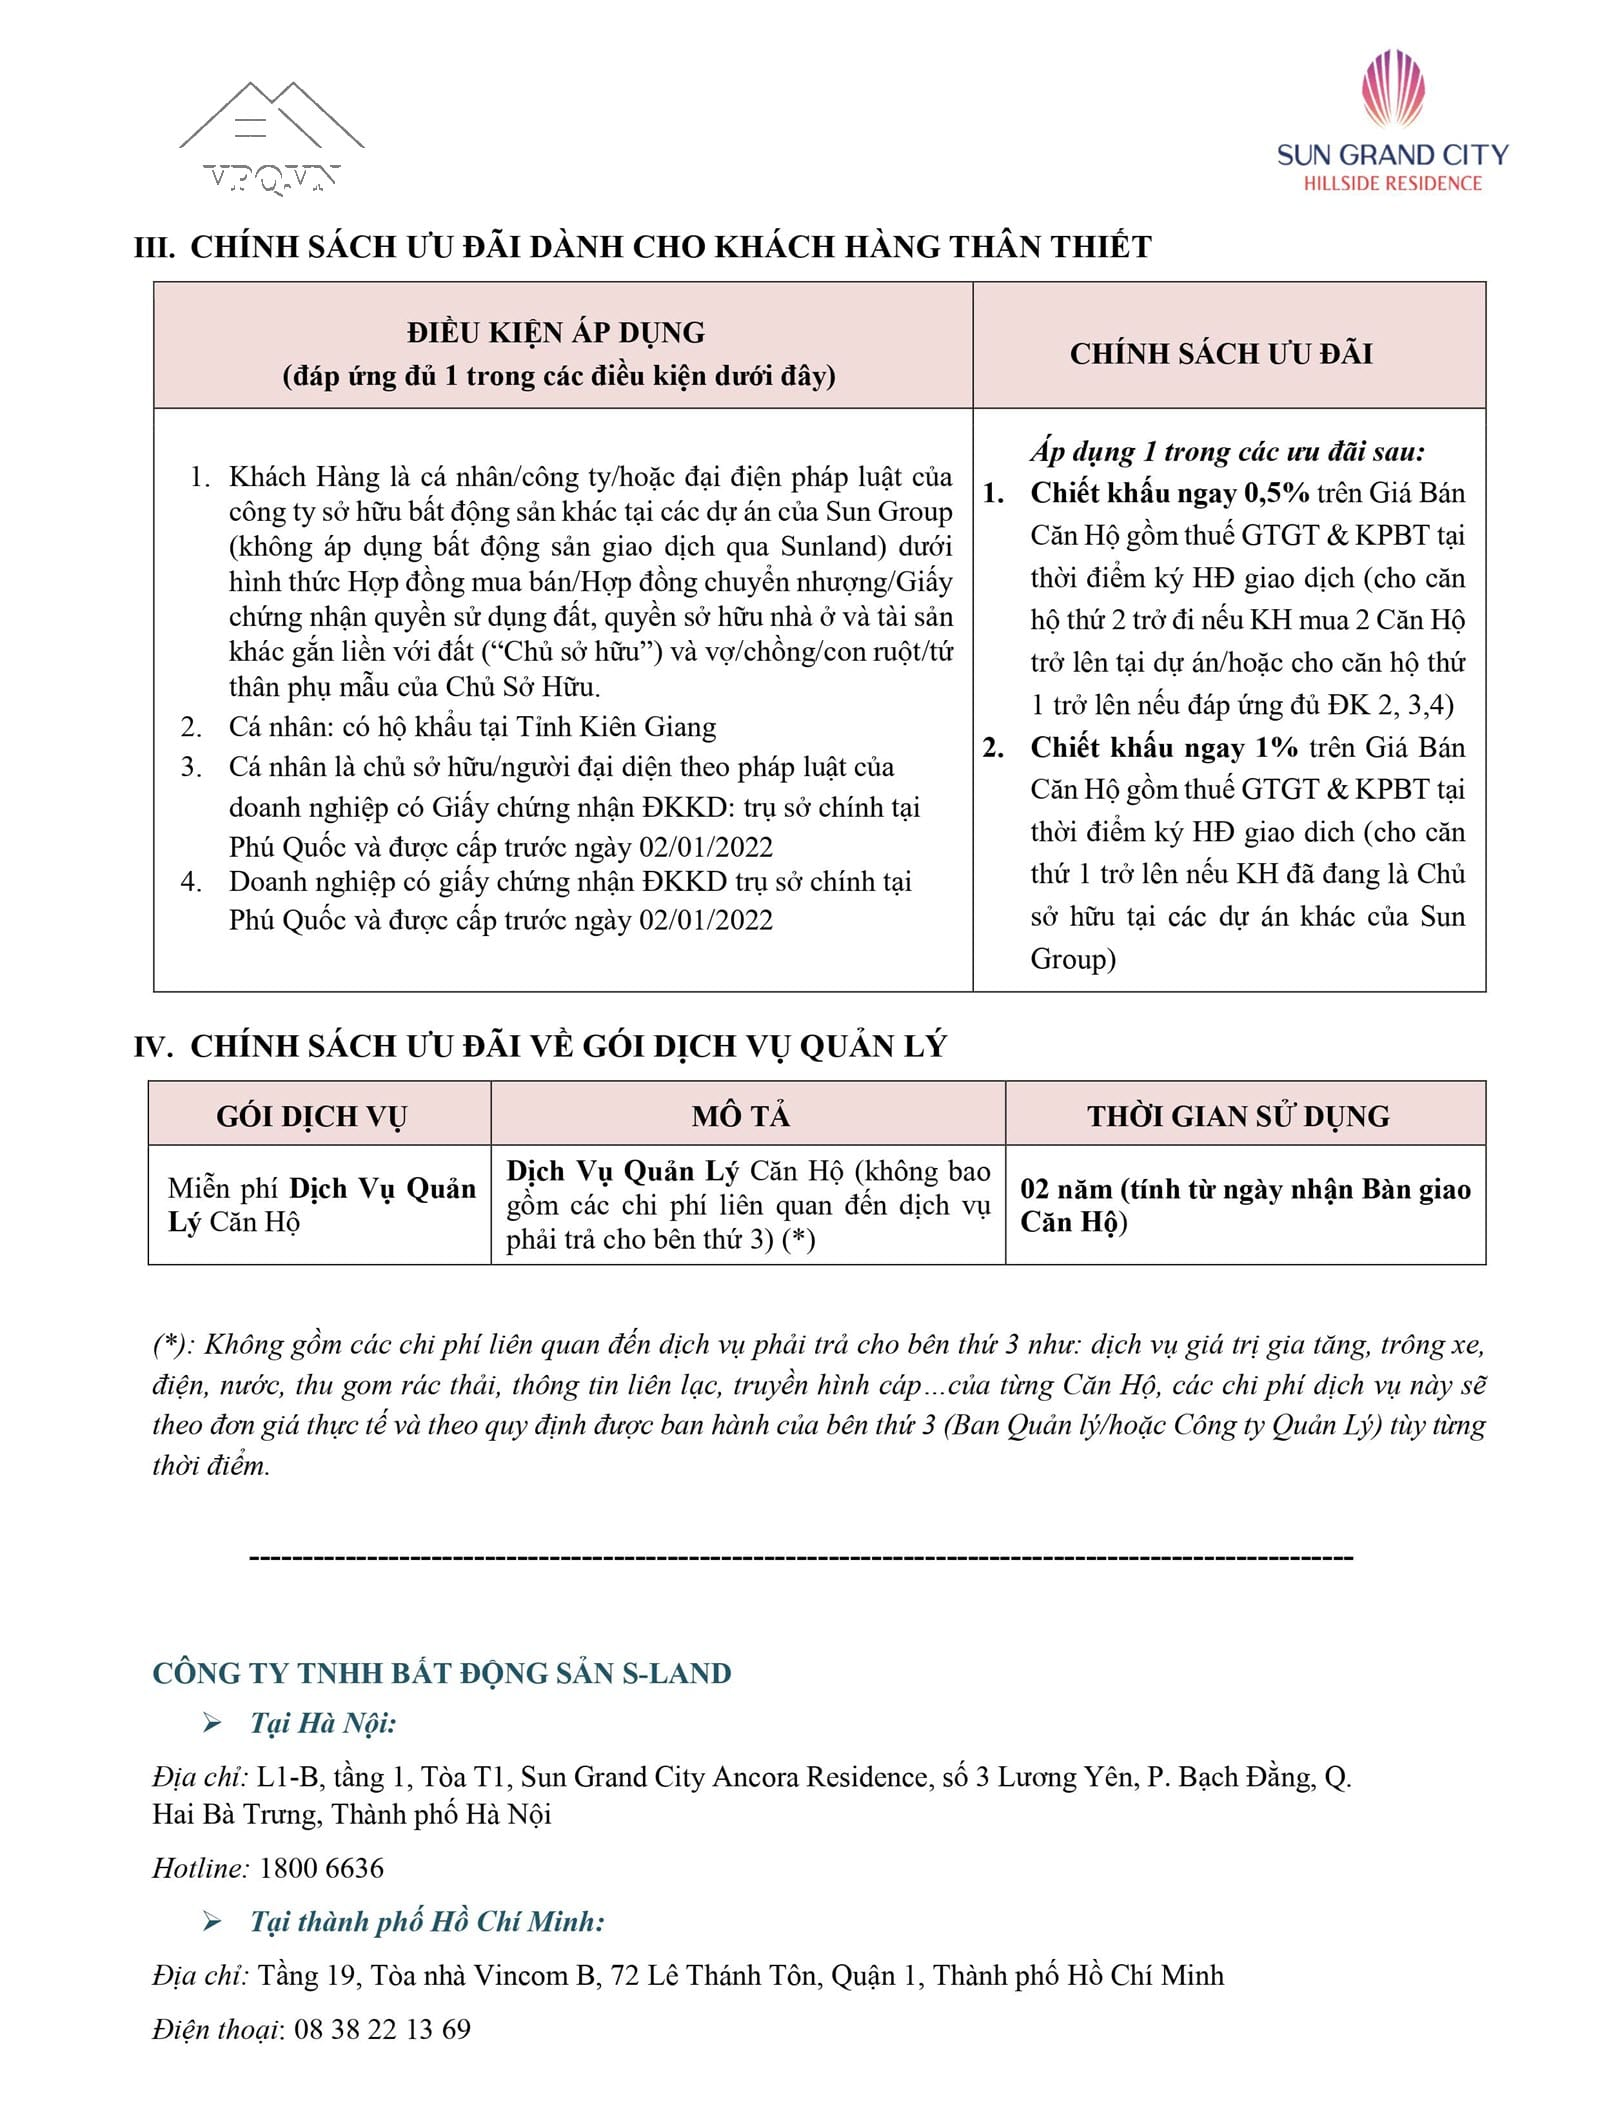 Chính sách bán hàng căn hộ Hillside Phú Quốc - Trang 3